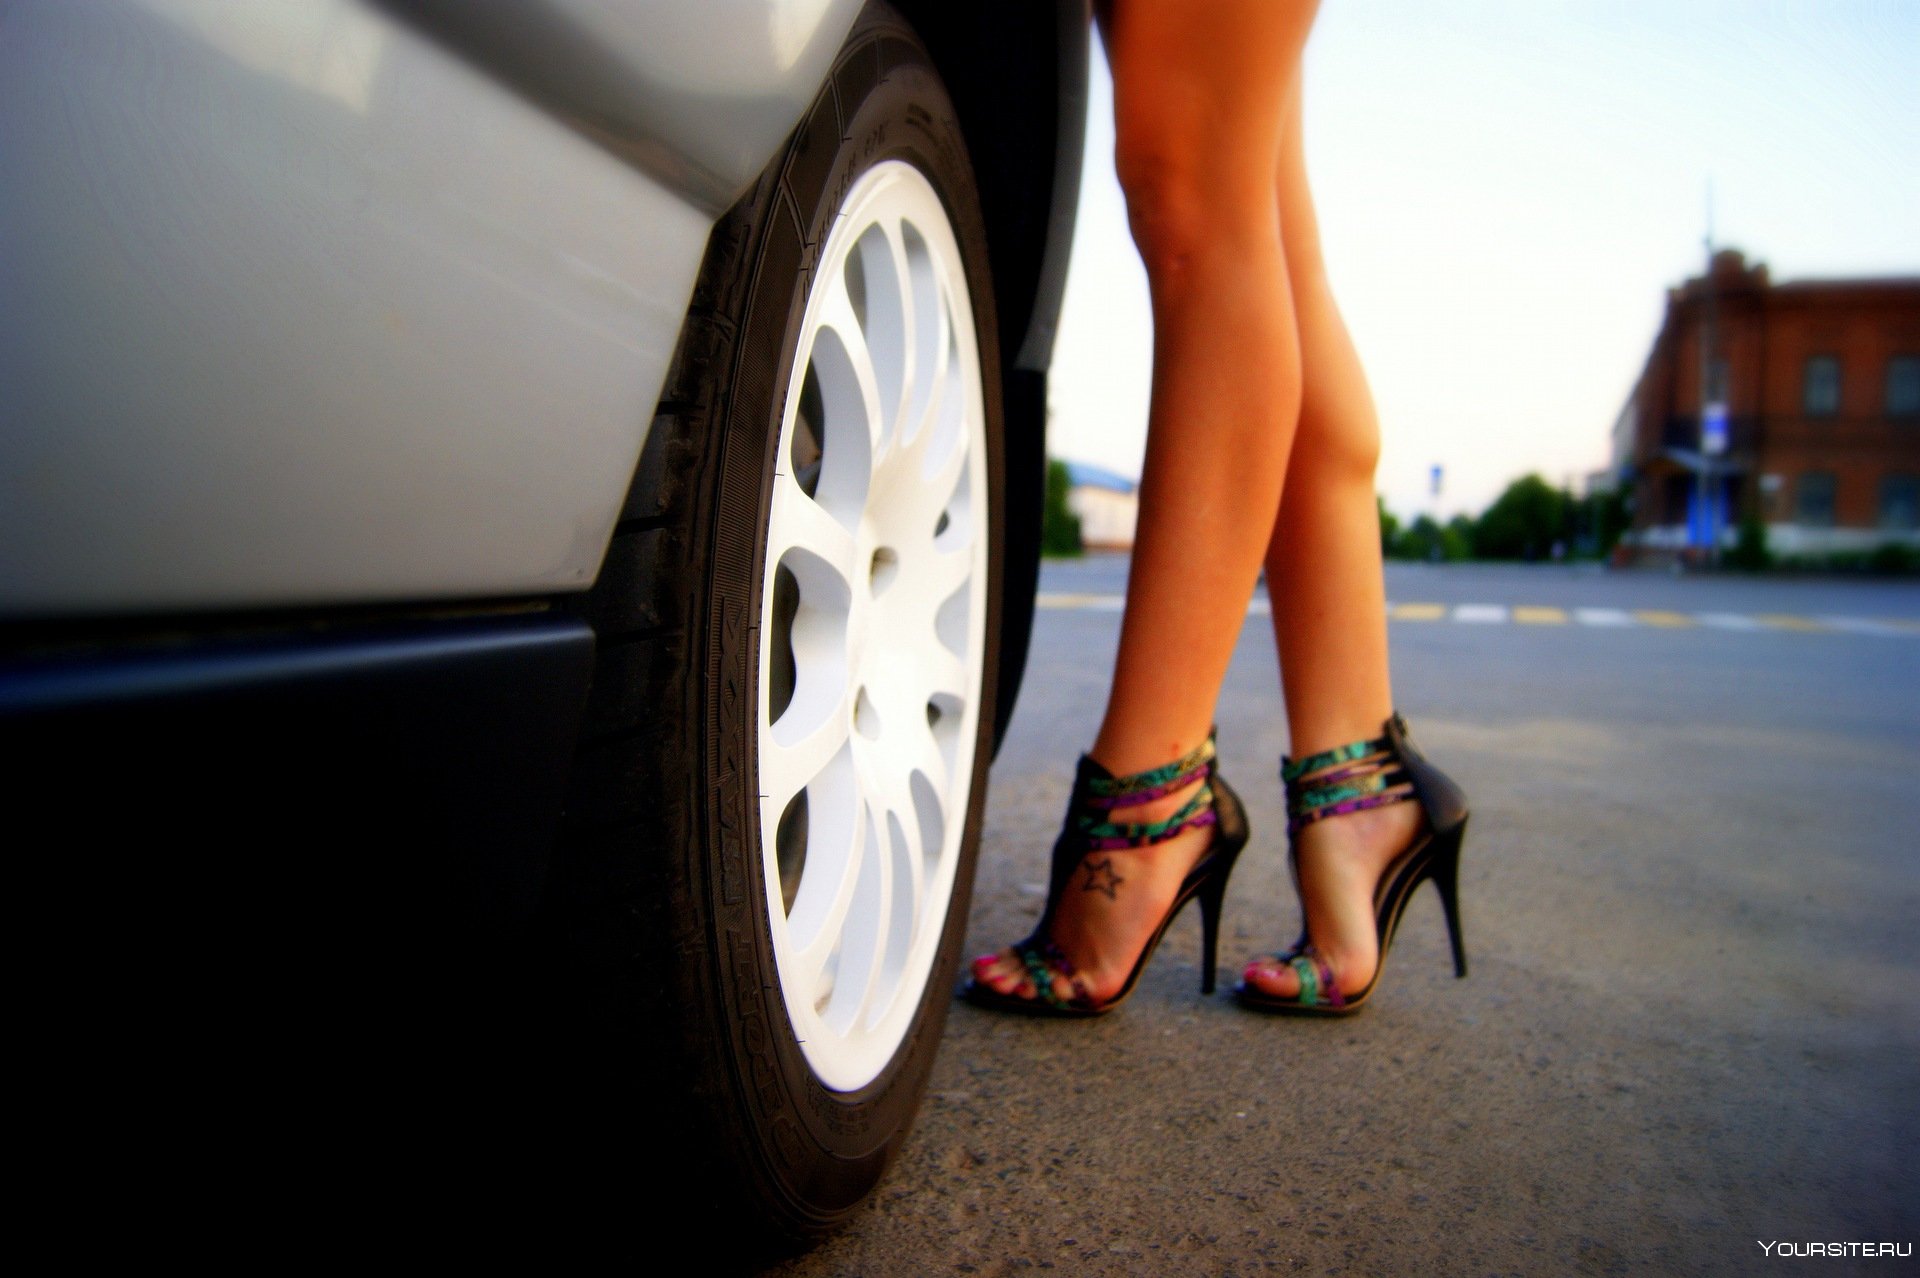 Стройные ноги сучки в пене возле машины  15 фото эротики